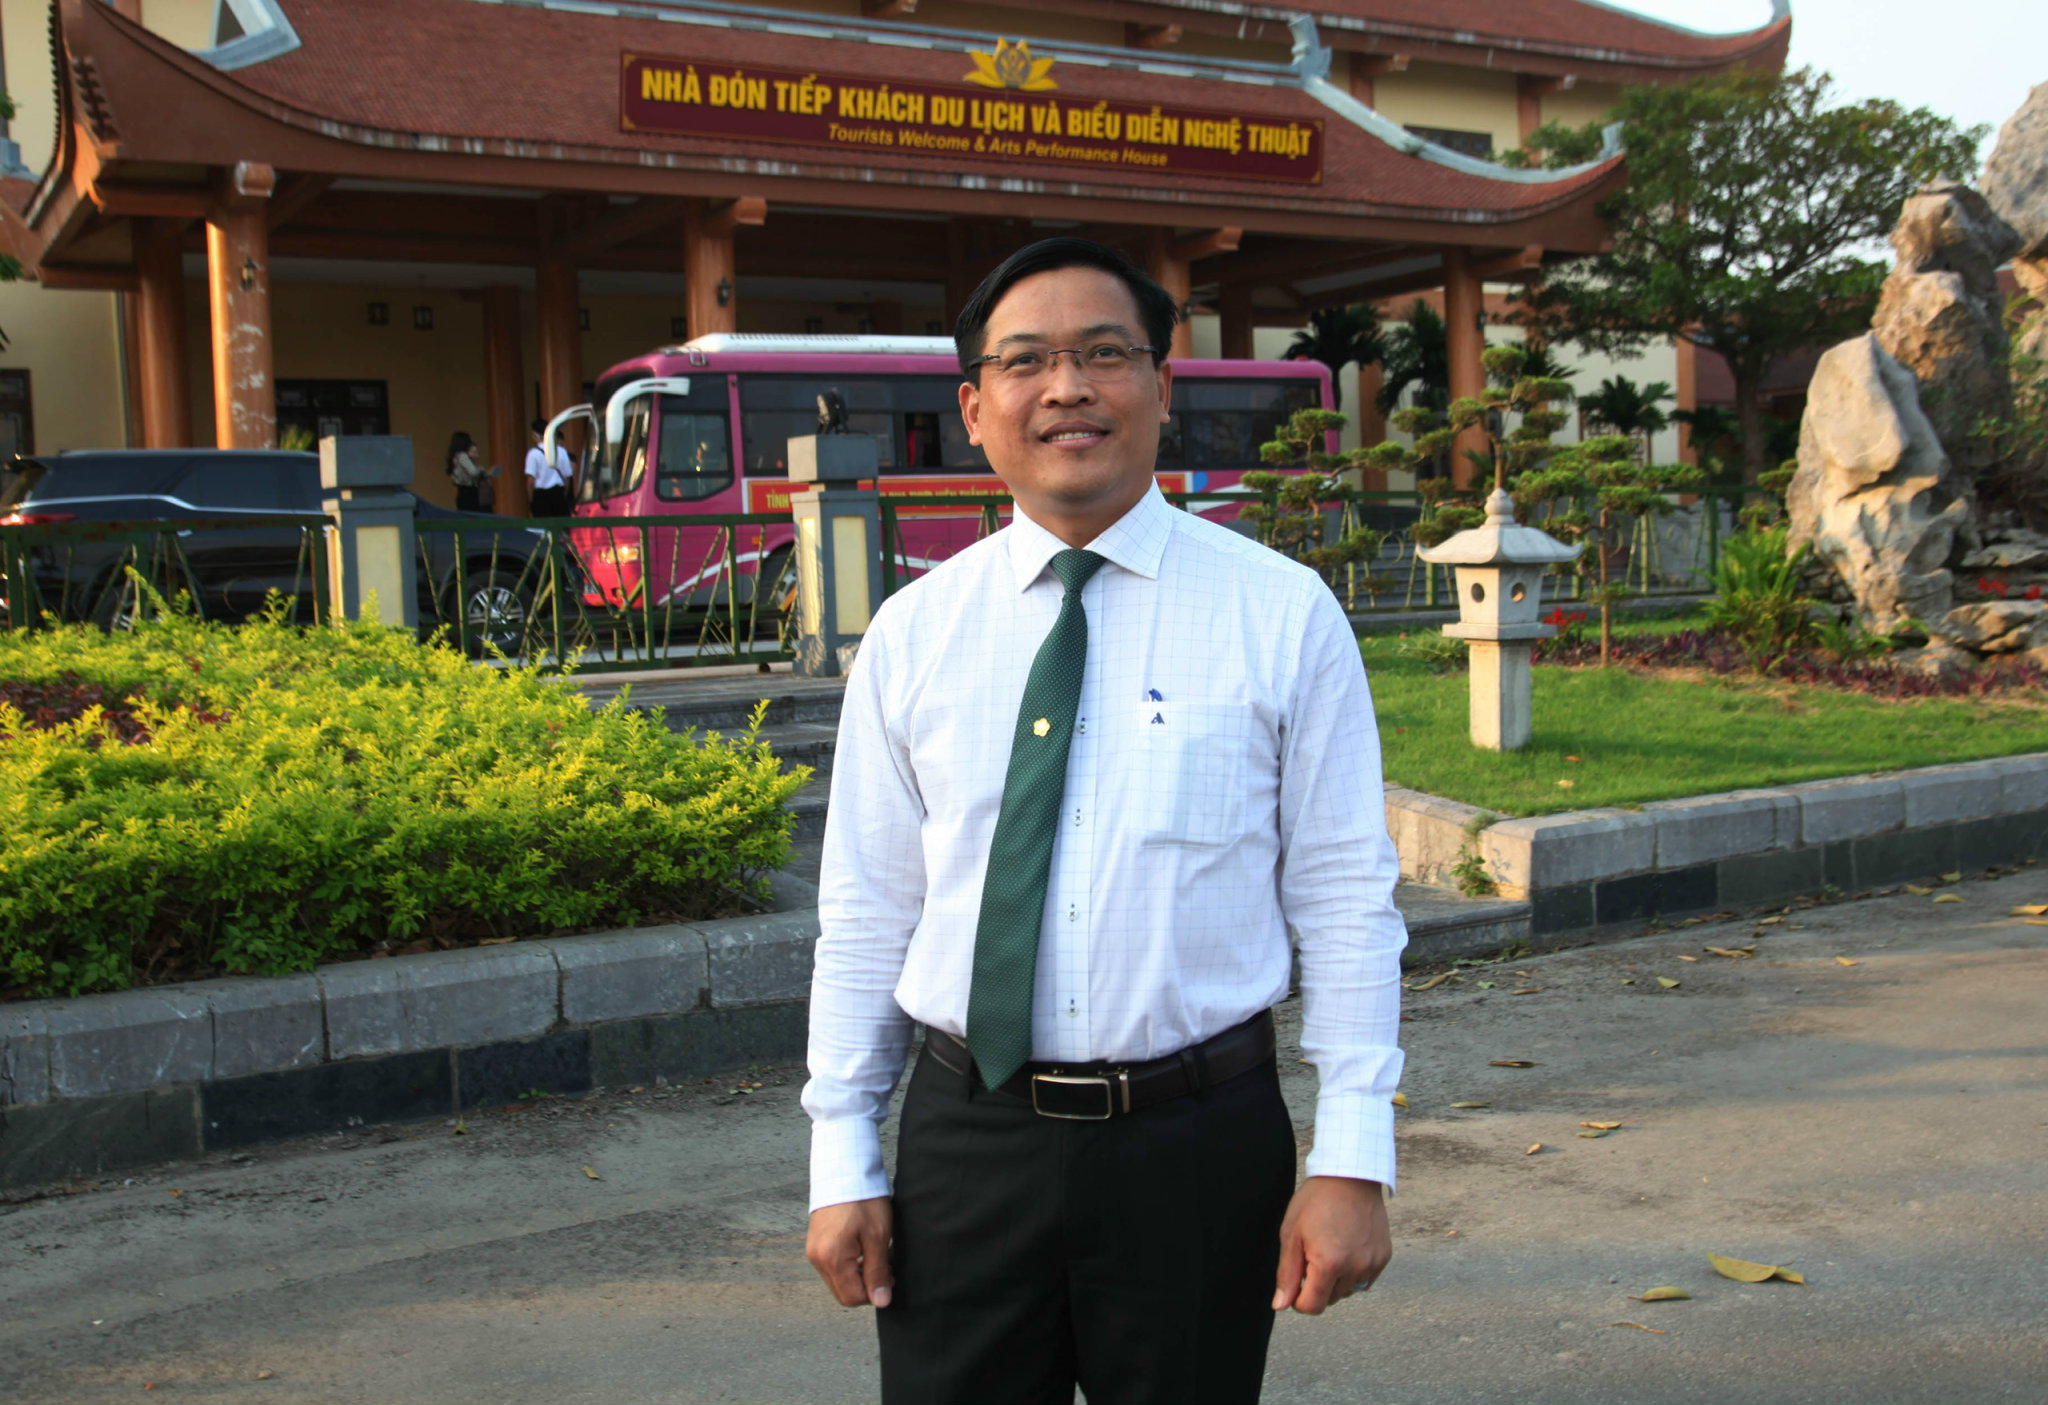 Ông Trần Thanh Sơn - Chủ tịch HHDL Phú Thọ, Tổng Giám đốc Khách sạn Sài Gòn - Phú Thọ